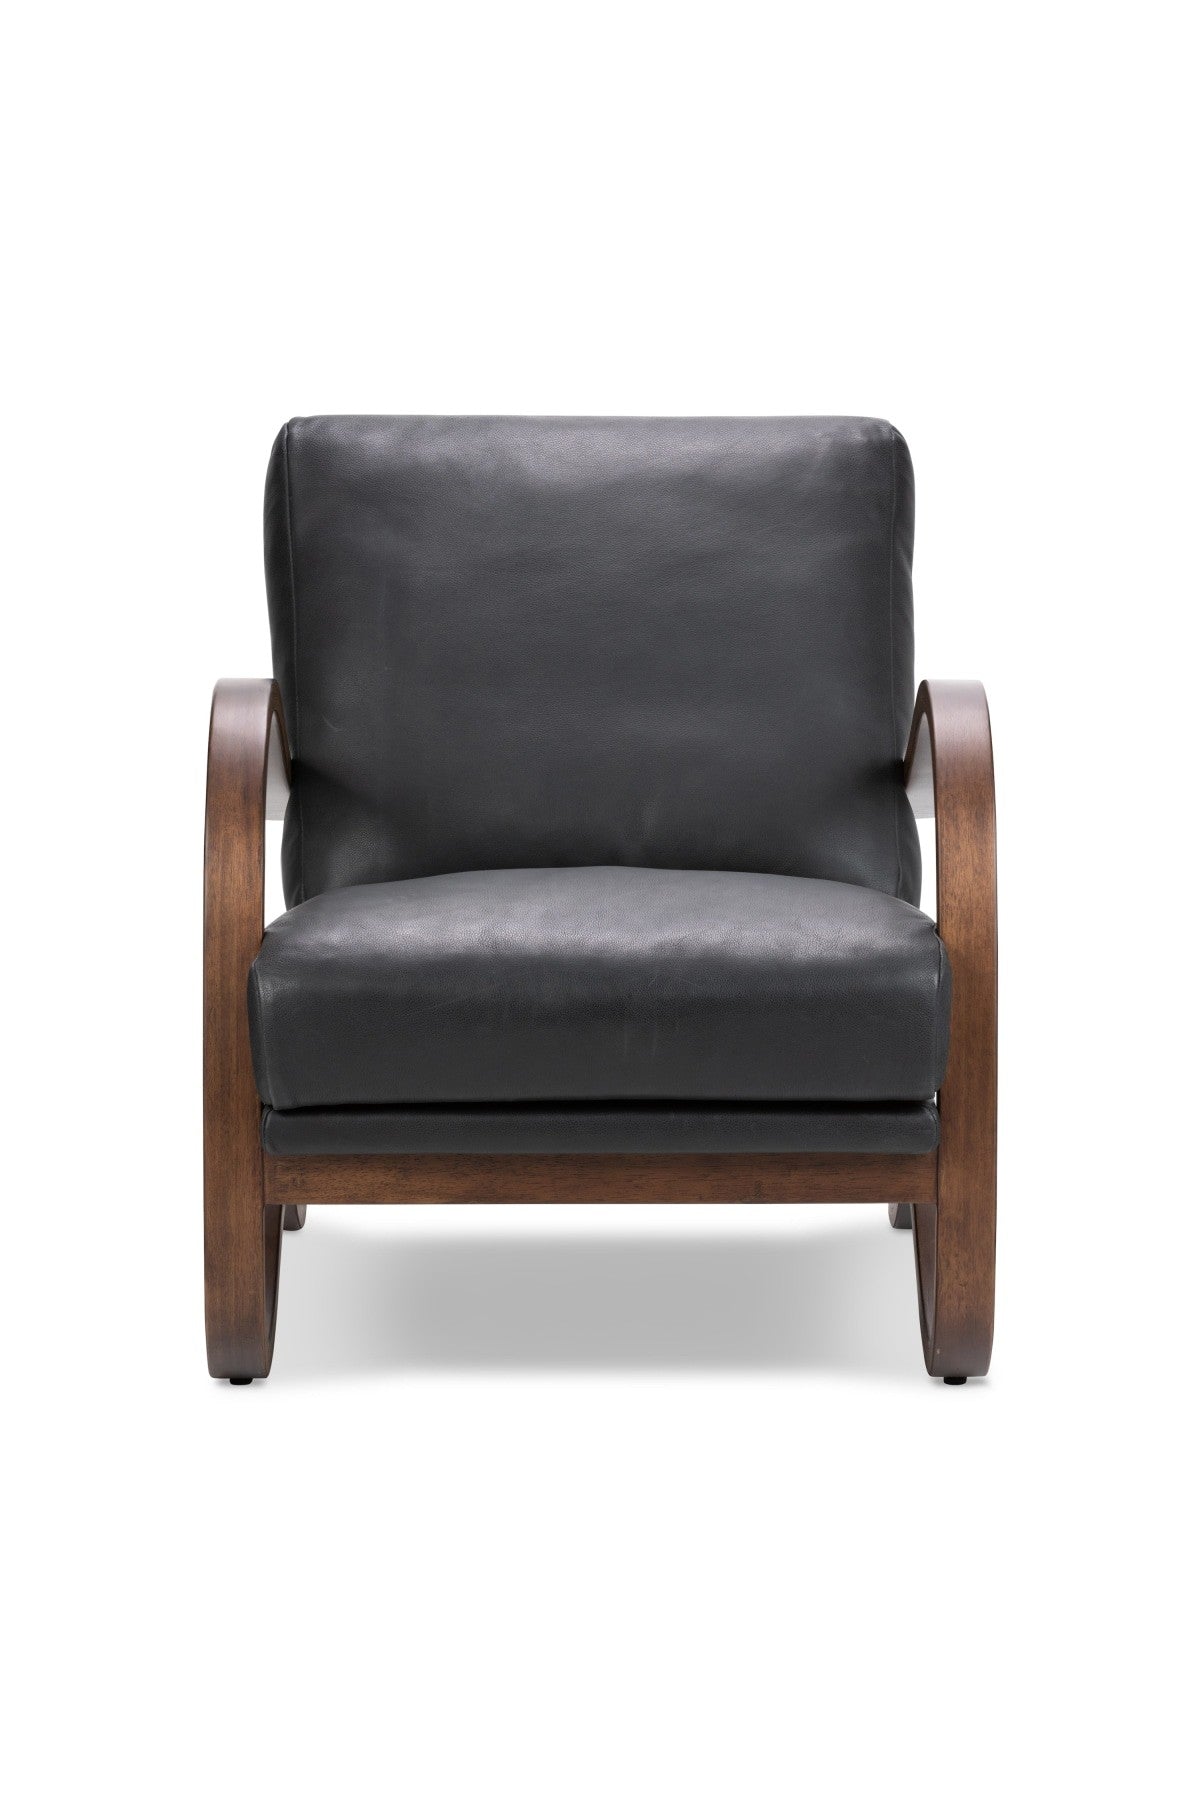 Paxton Chair - Brickhouse Black